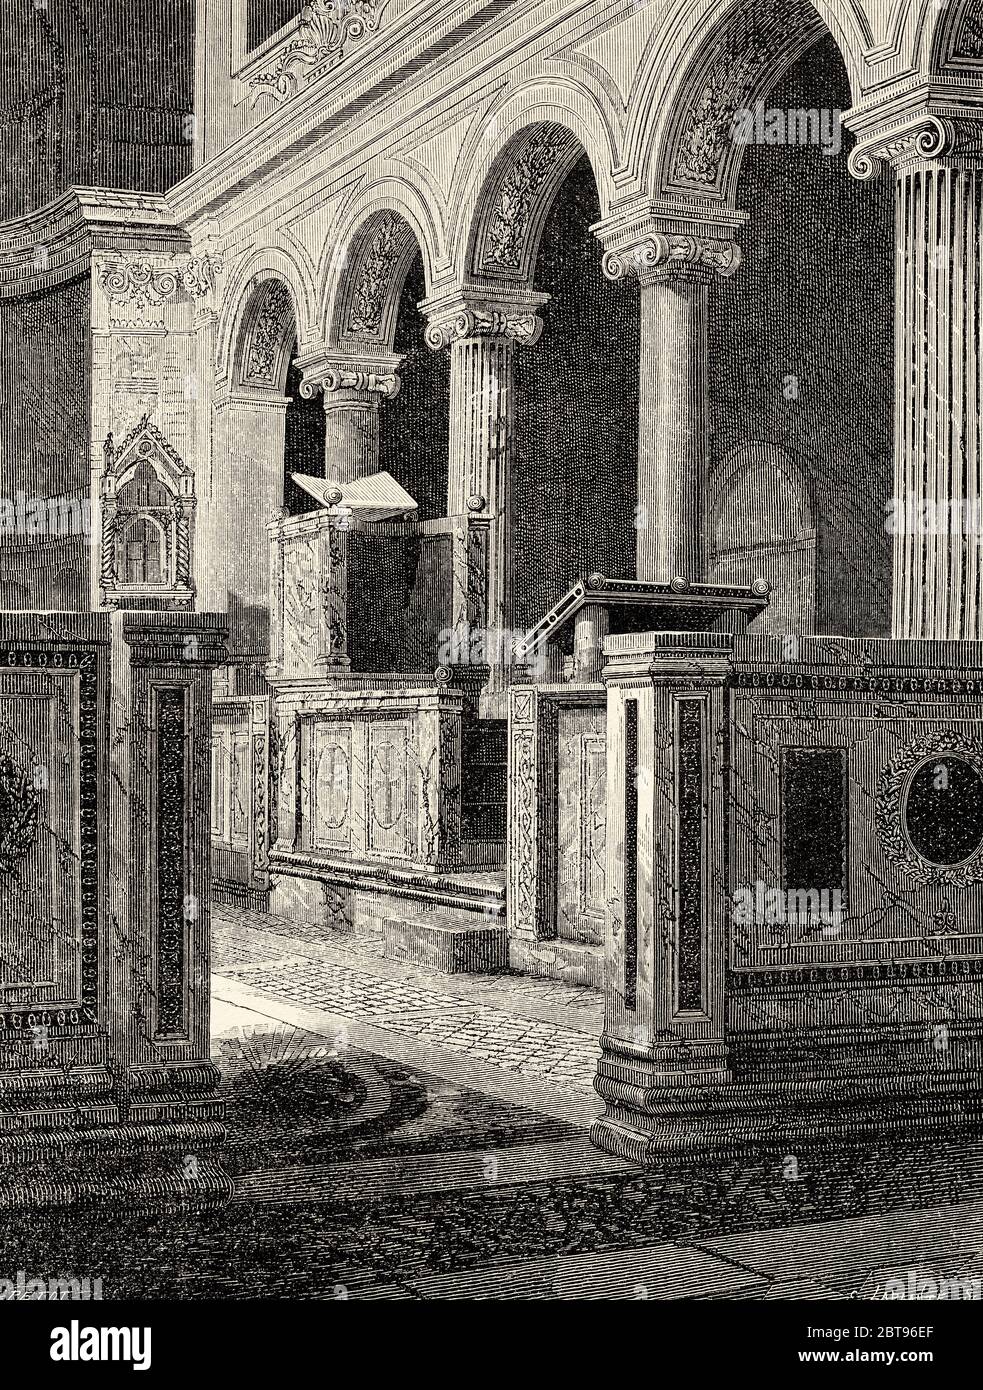 Epistle Ambo oder Kanzel von St. Clement, Rom. Italien, Europa. Reise nach Rom von Francis Wey 19. Jahrhundert Stockfoto